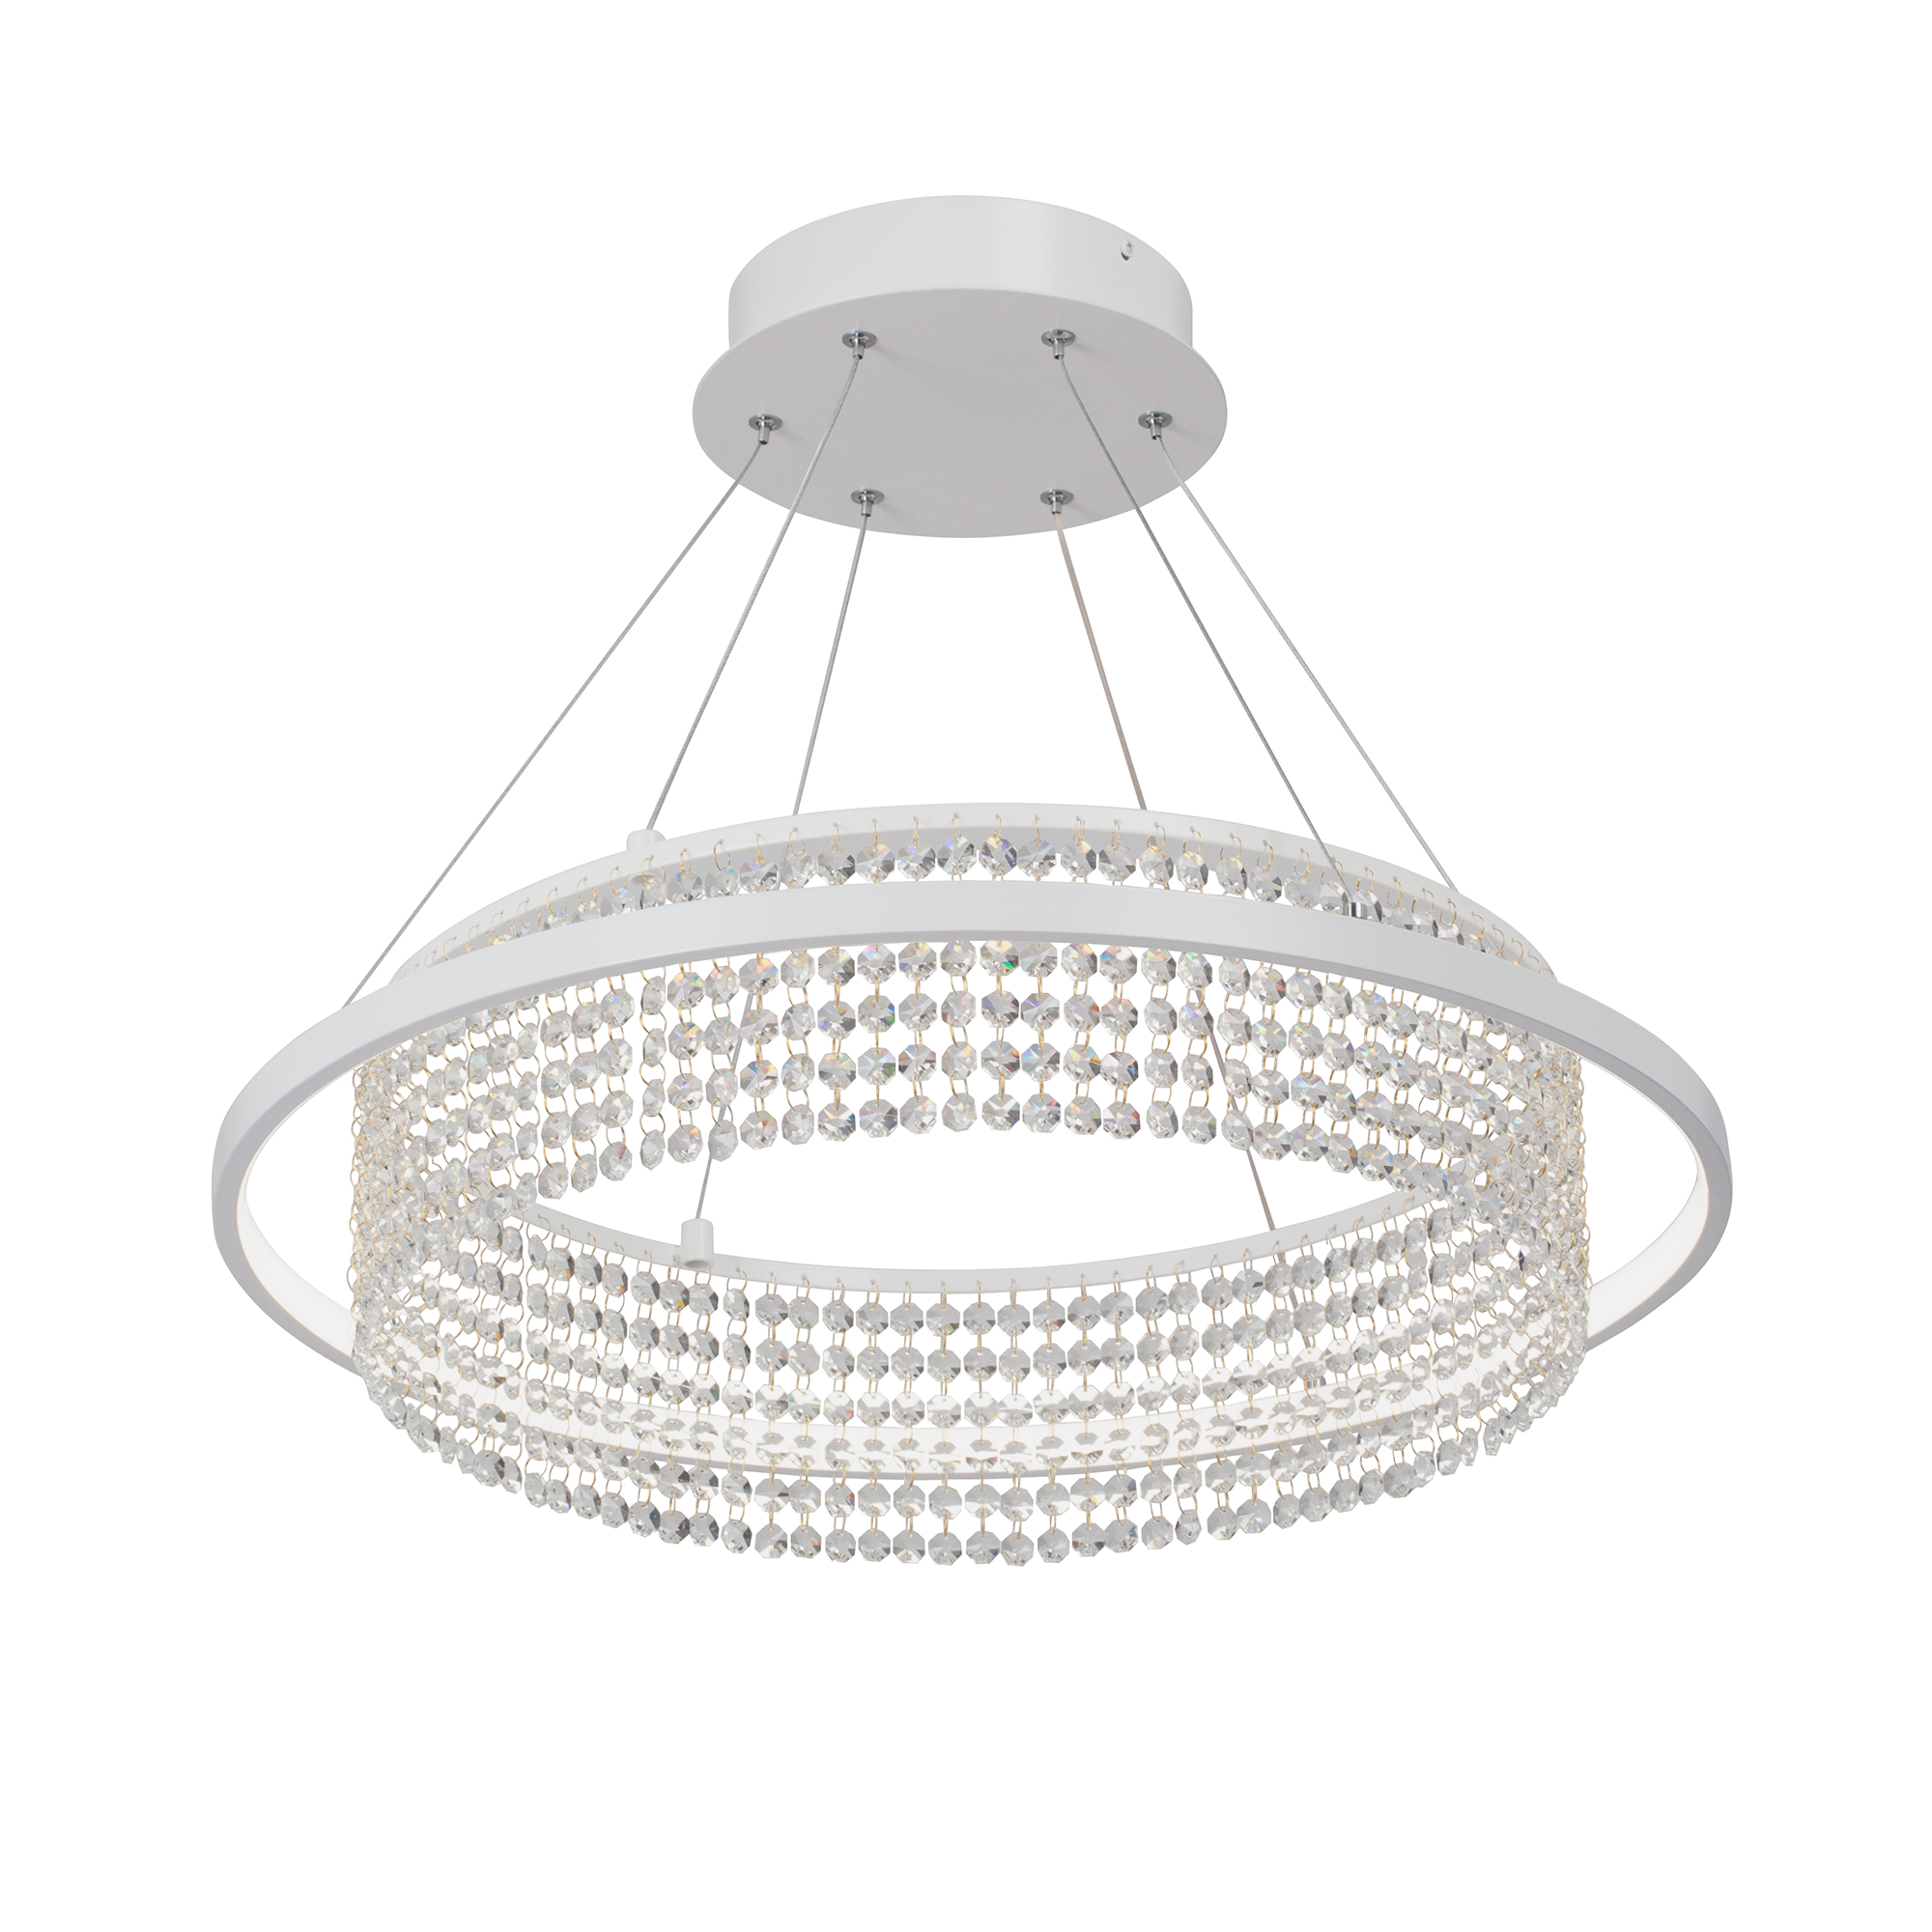 Светильник Vitaluce Led V5400-0/1S 37Вт3900-4200К светодиодный подвесной светильник в скандинавском стиле освещение для кухни гостиной лампа со стразами для столовой подвесное освещени